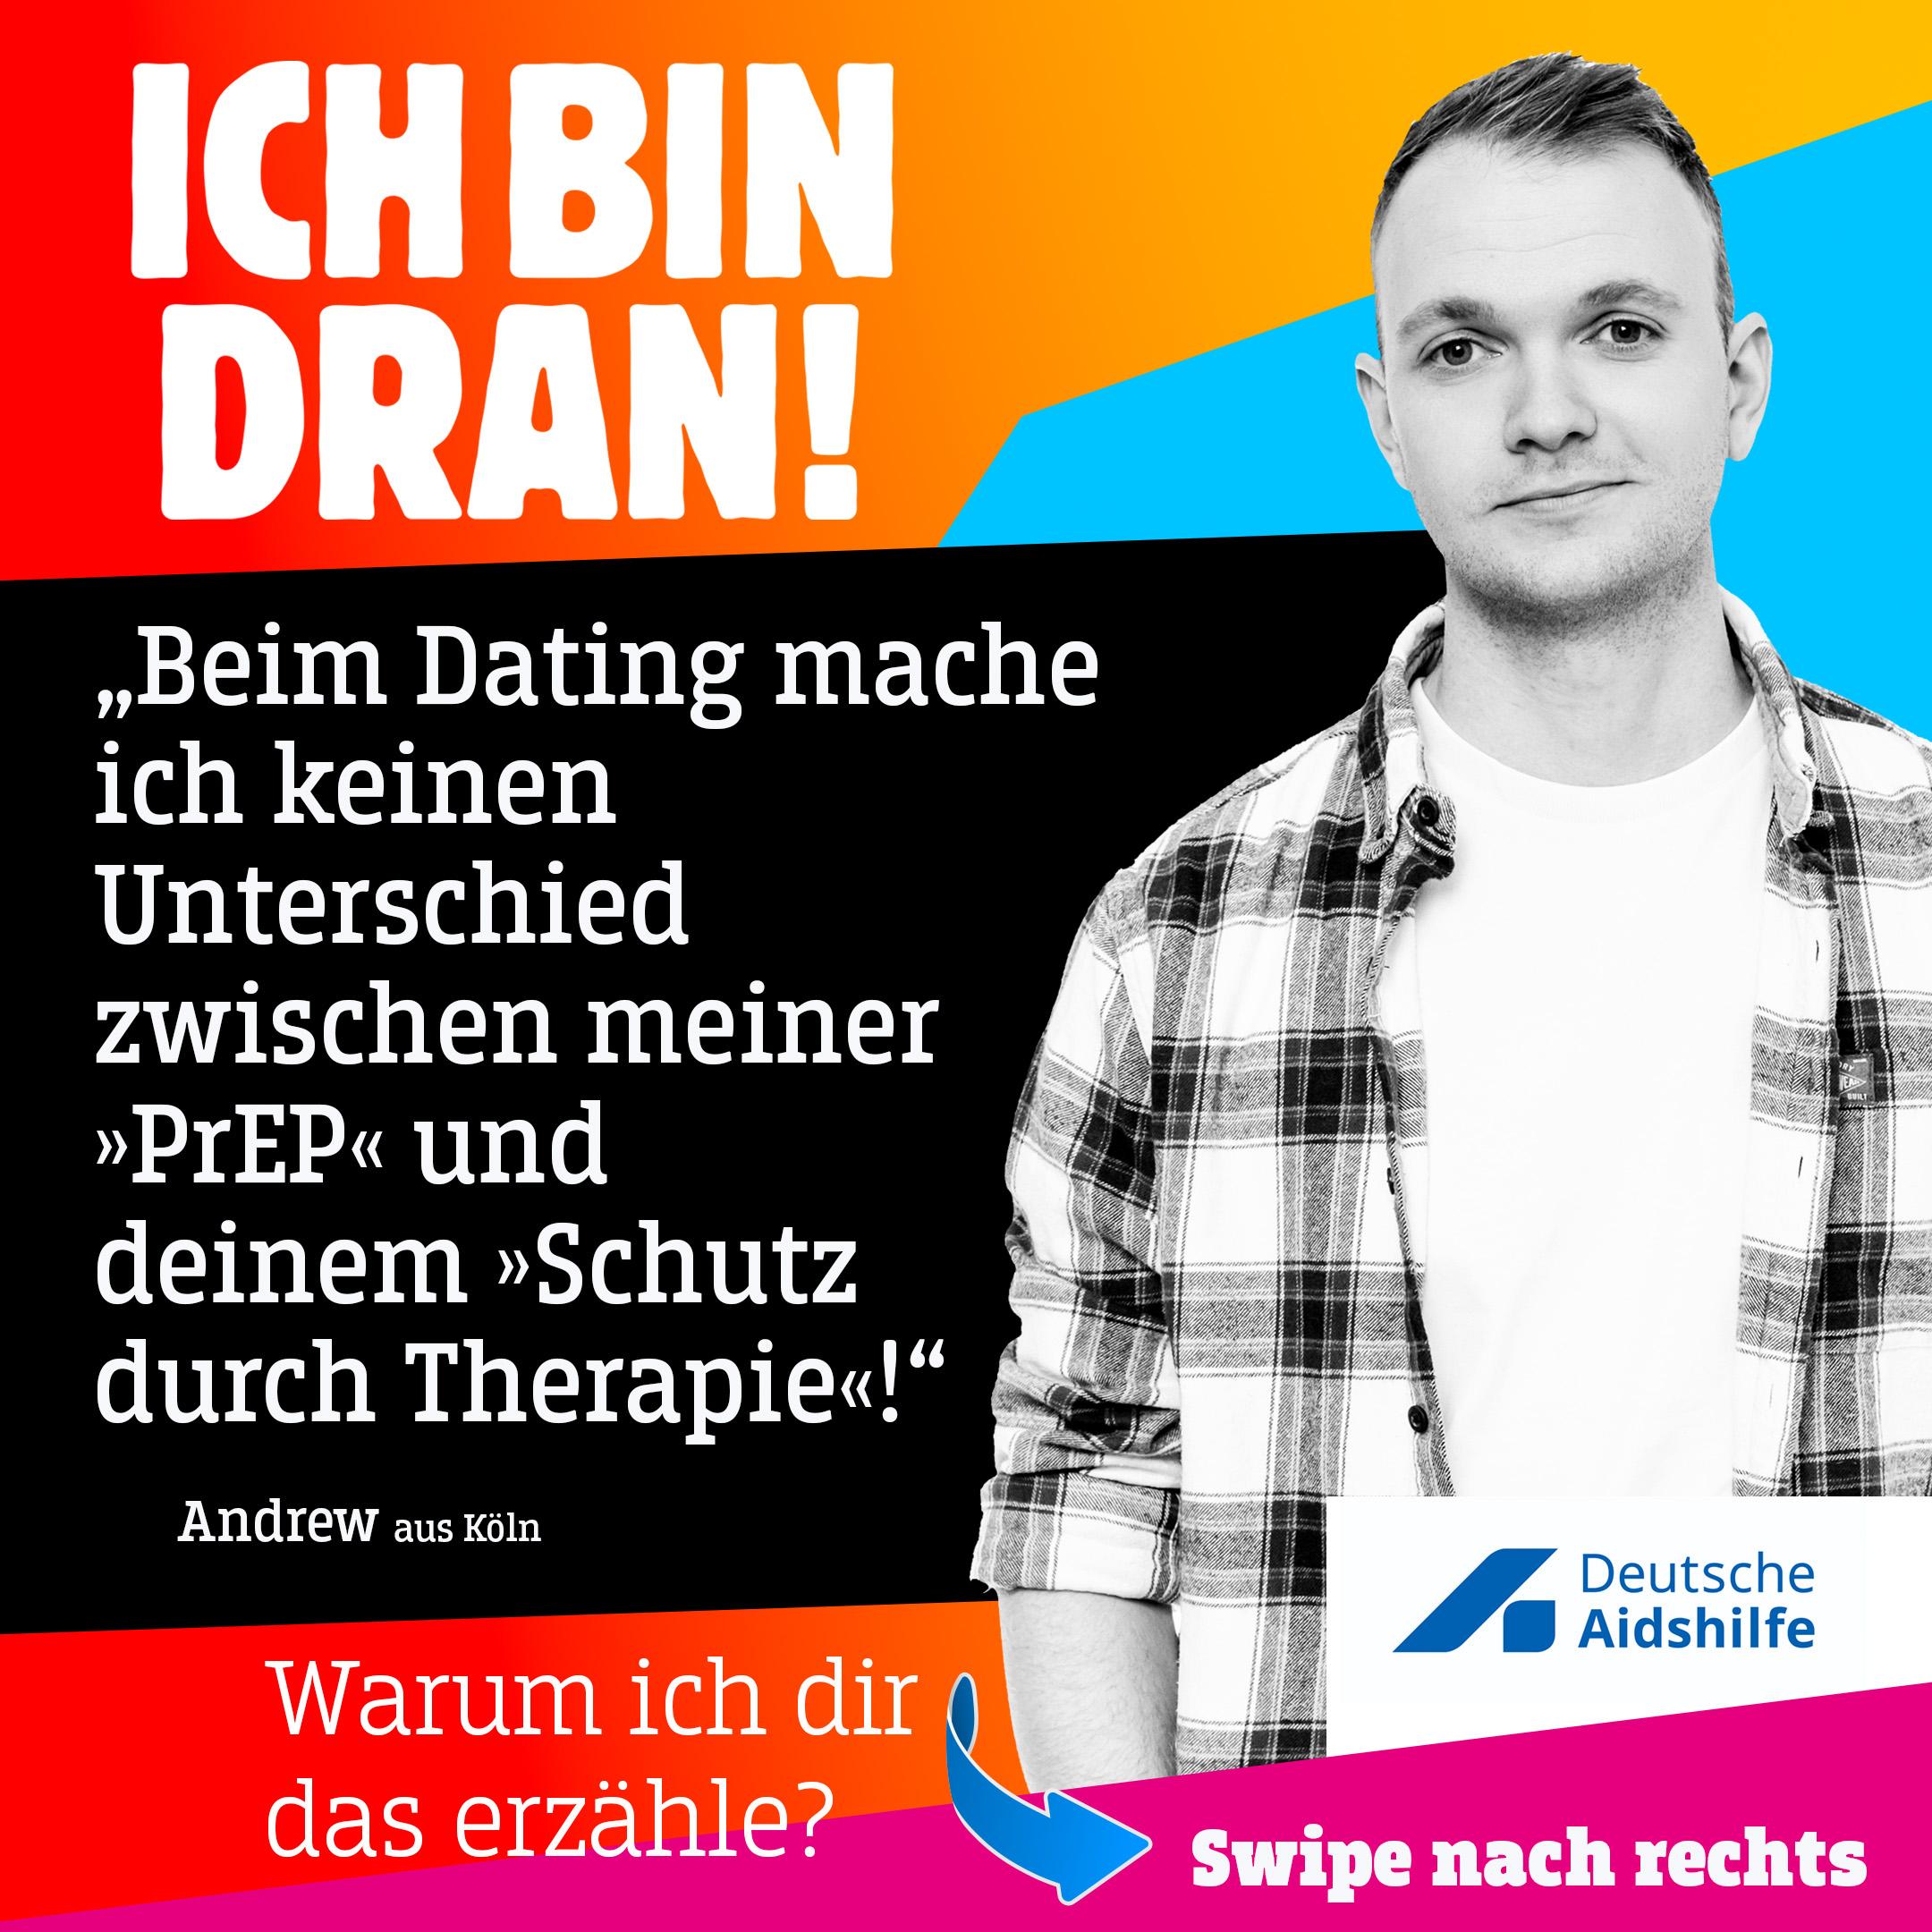 Andrew aus Köln sagt: "Beim Dating mache ich keinen Unterschied zwischen meiner PrEP und deinem Schutz durch Therapie!"